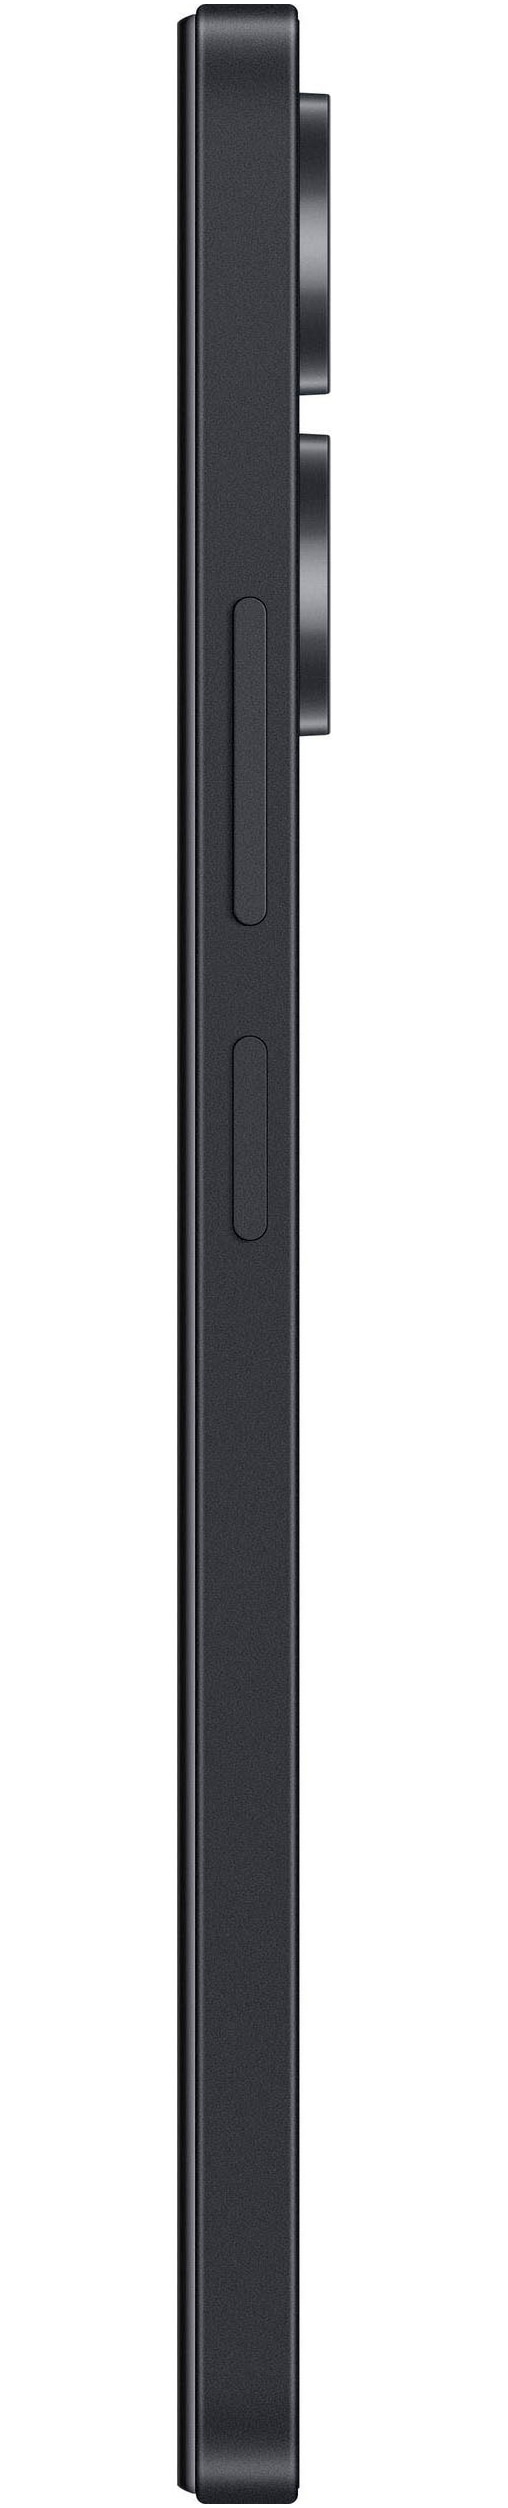 Xiaomi Smartphone »Redmi 13C 128GB«, midnight black, 17,1 cm/6,74 Zoll, 128 GB Speicherplatz, 50 MP Kamera